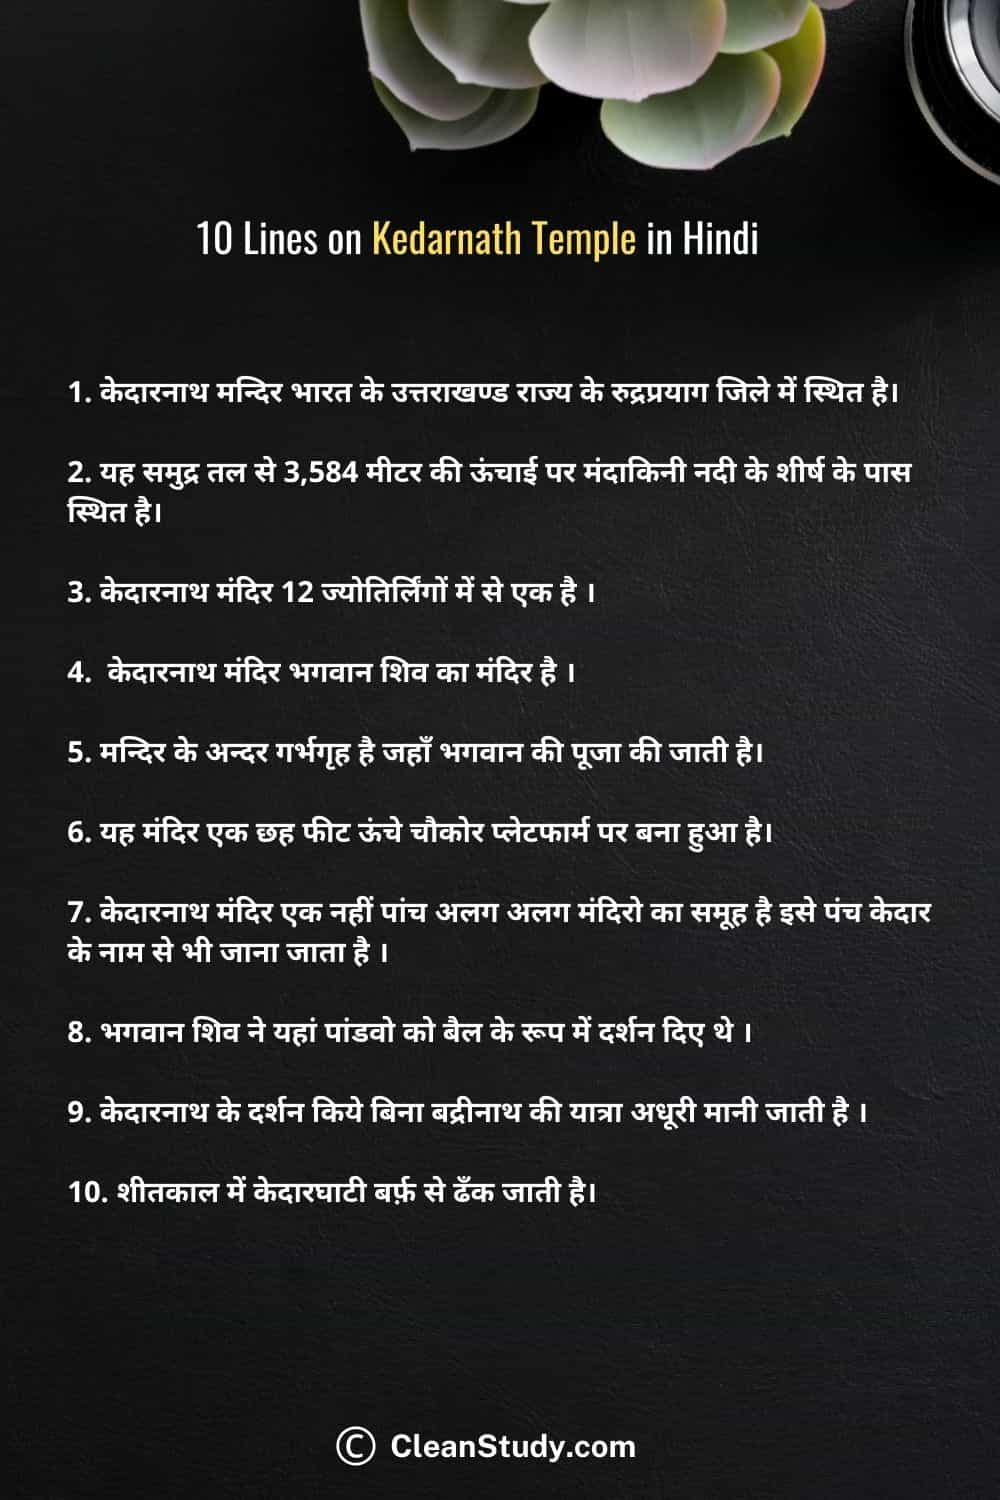 10 Lines on Kedarnath Temple in Hindi